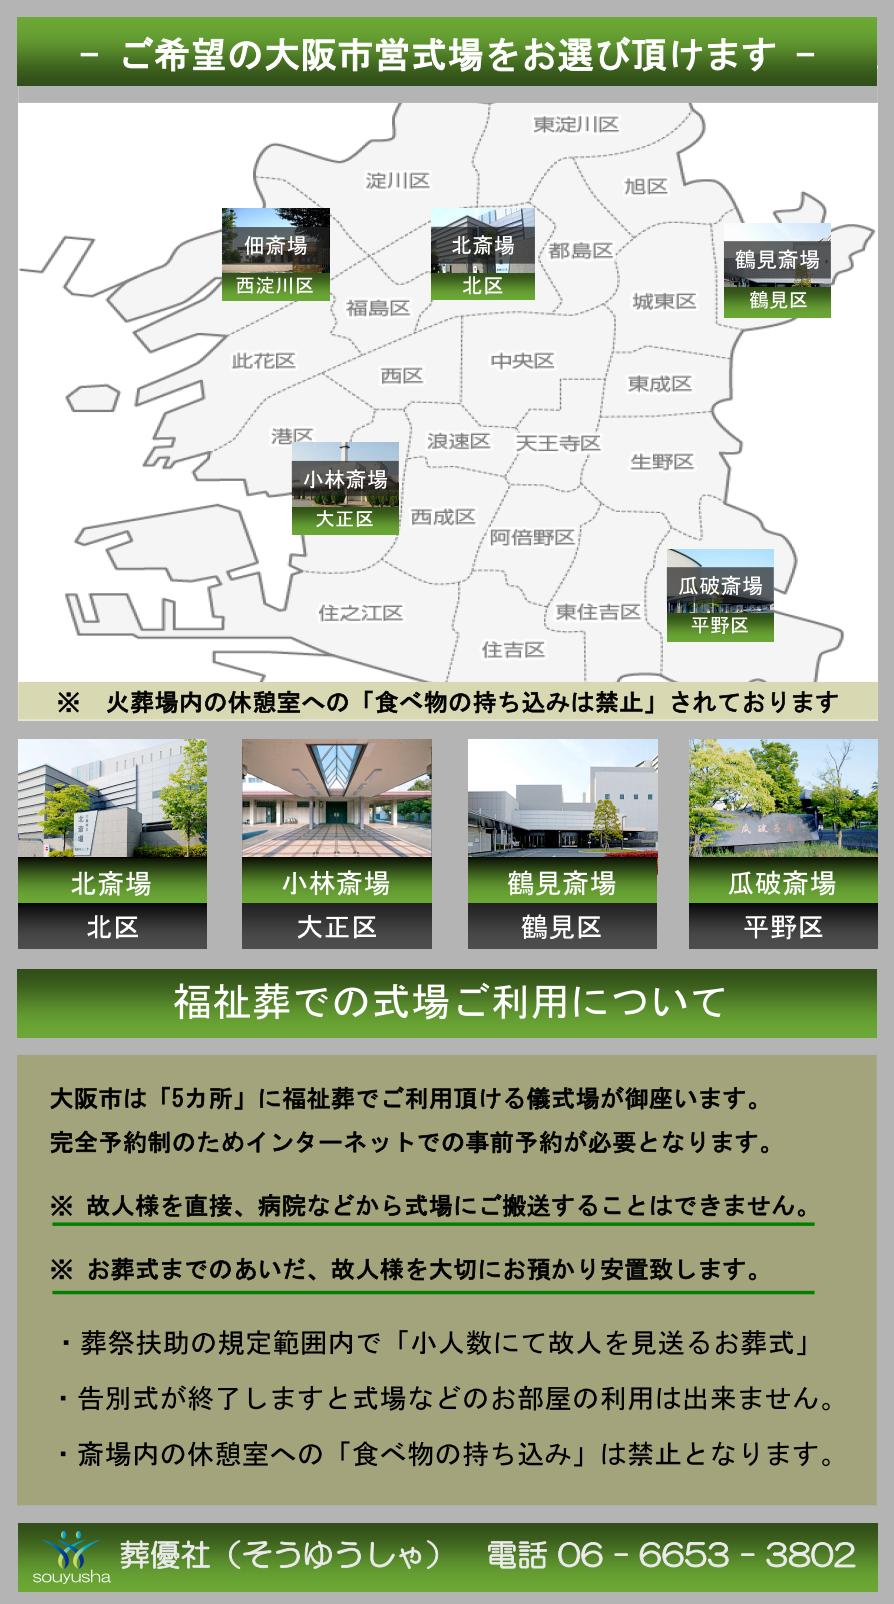 福祉・生活保護葬儀で利用できる大阪市営式場